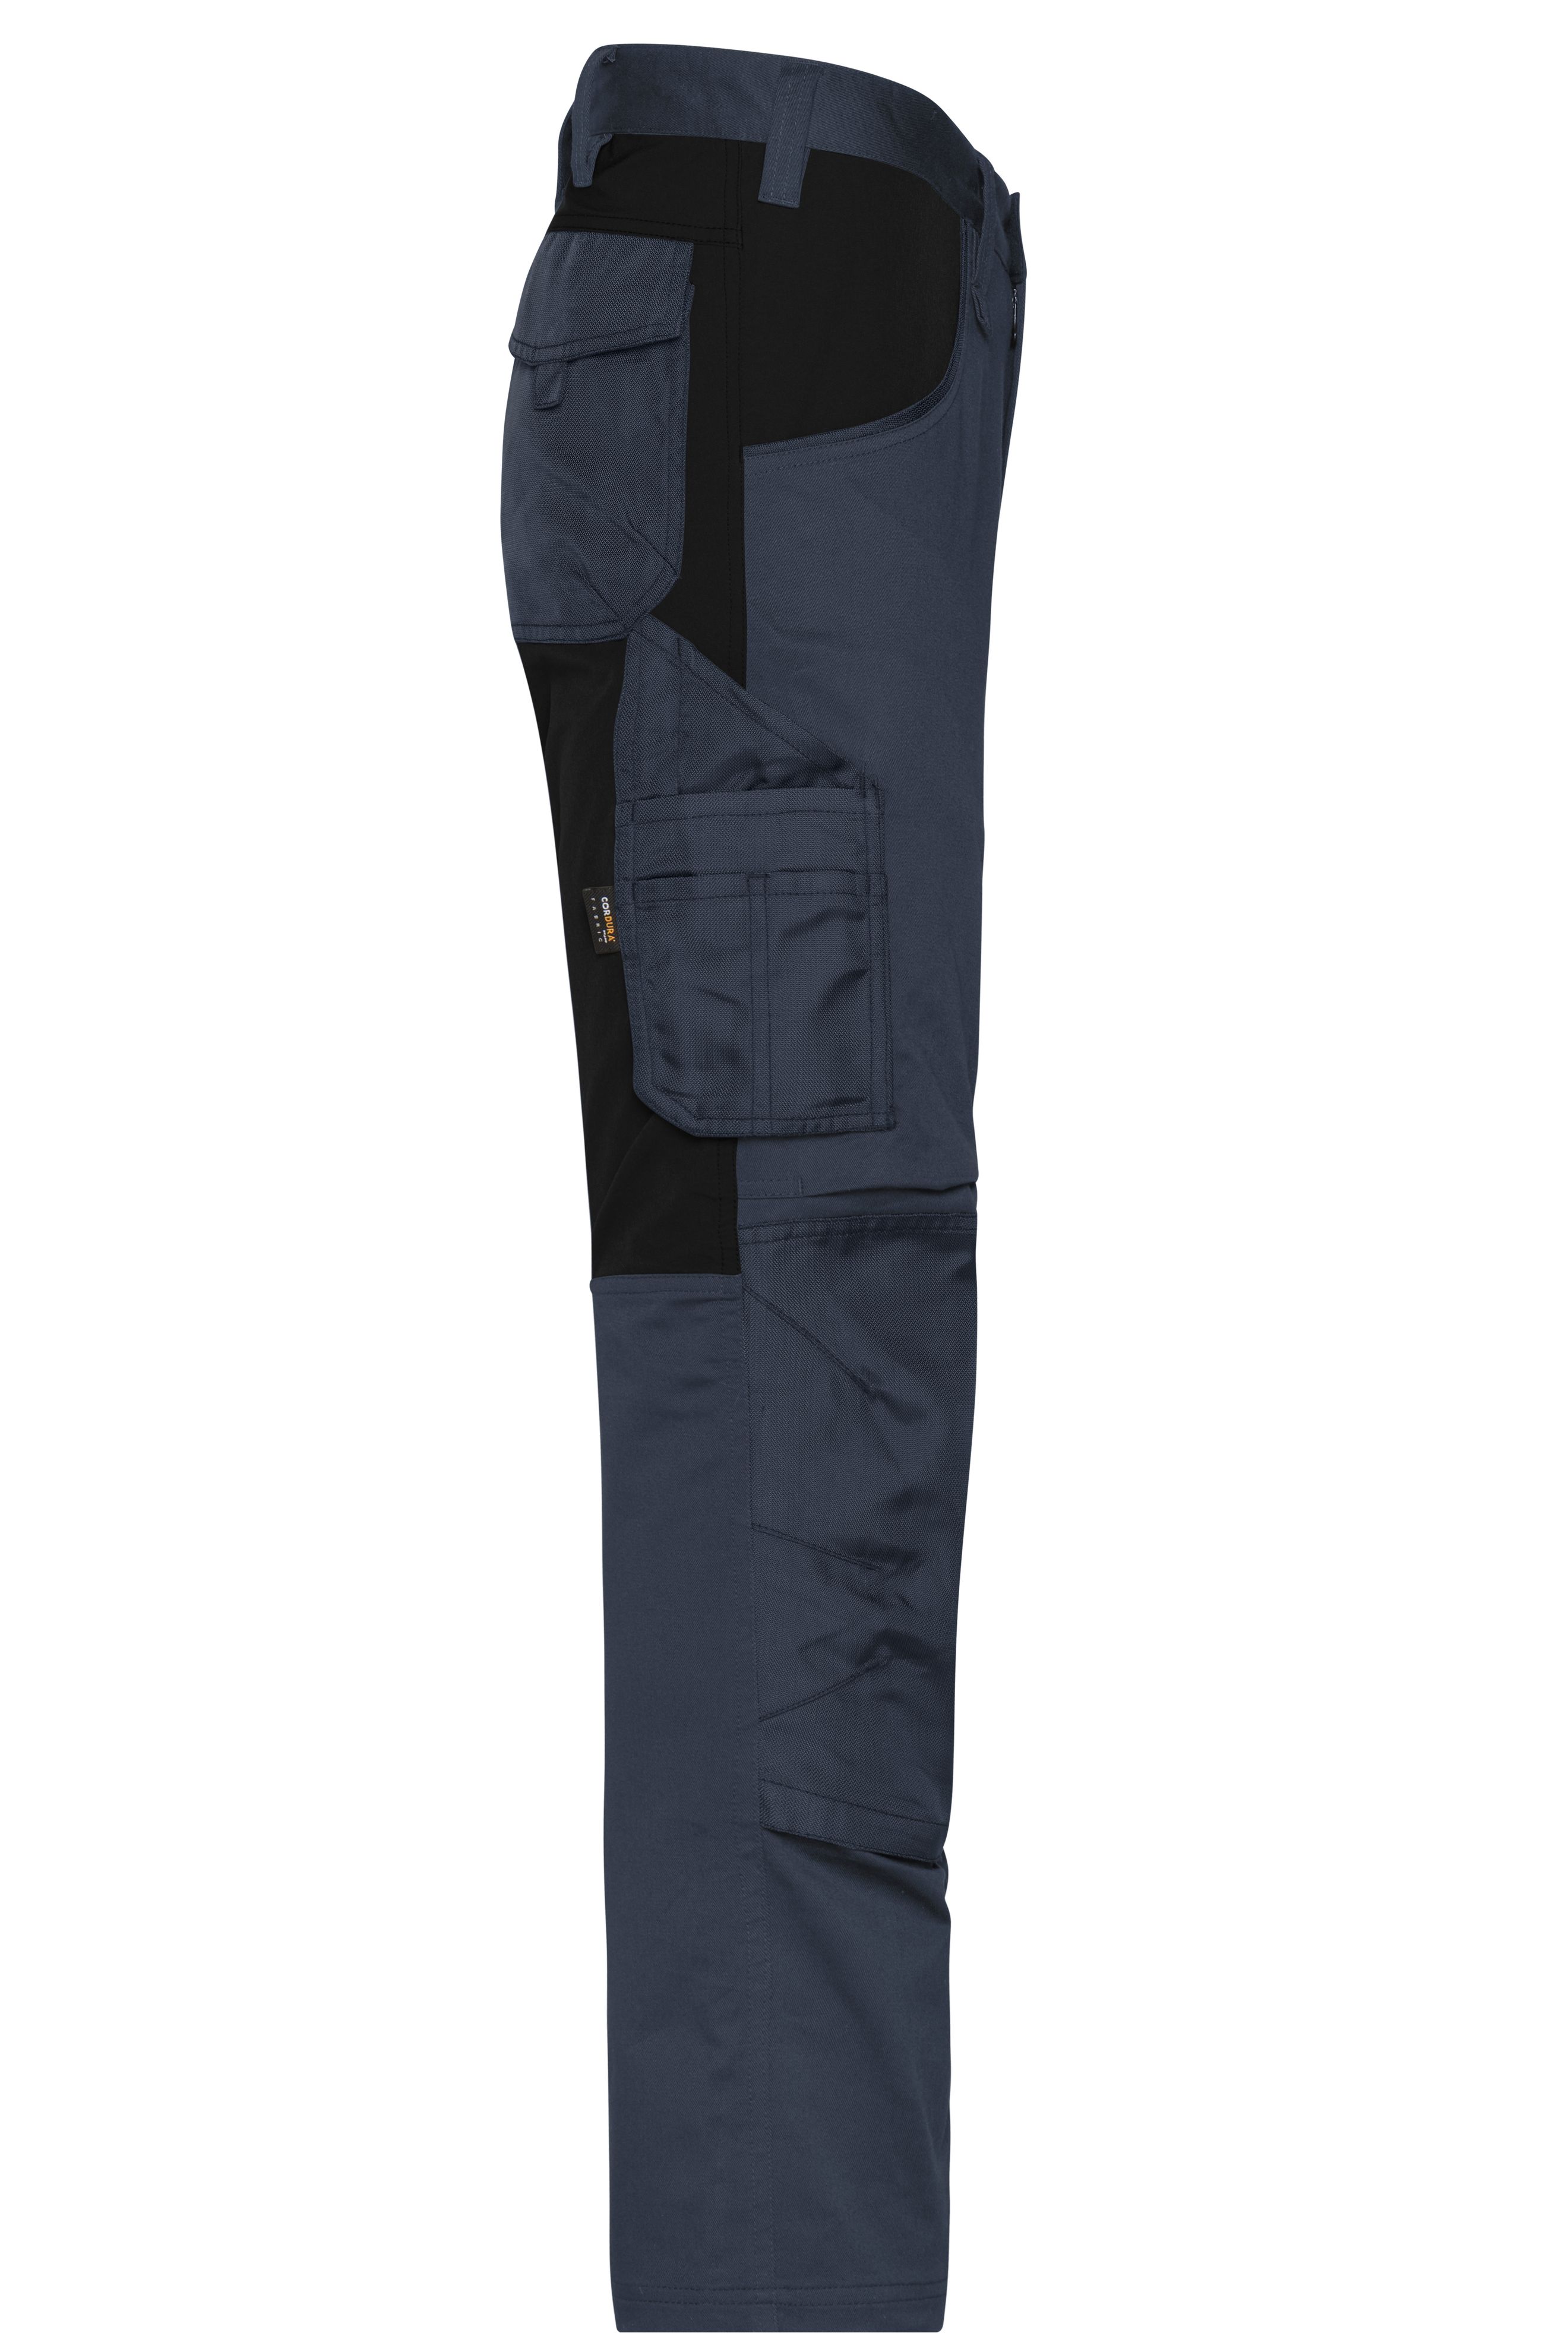 Workwear Stretch-Pants Slim Line JN1812 Spezialisierte Arbeitshose in schmaler Schnittführung mit elastischen Einsätzen und funktionellen Details